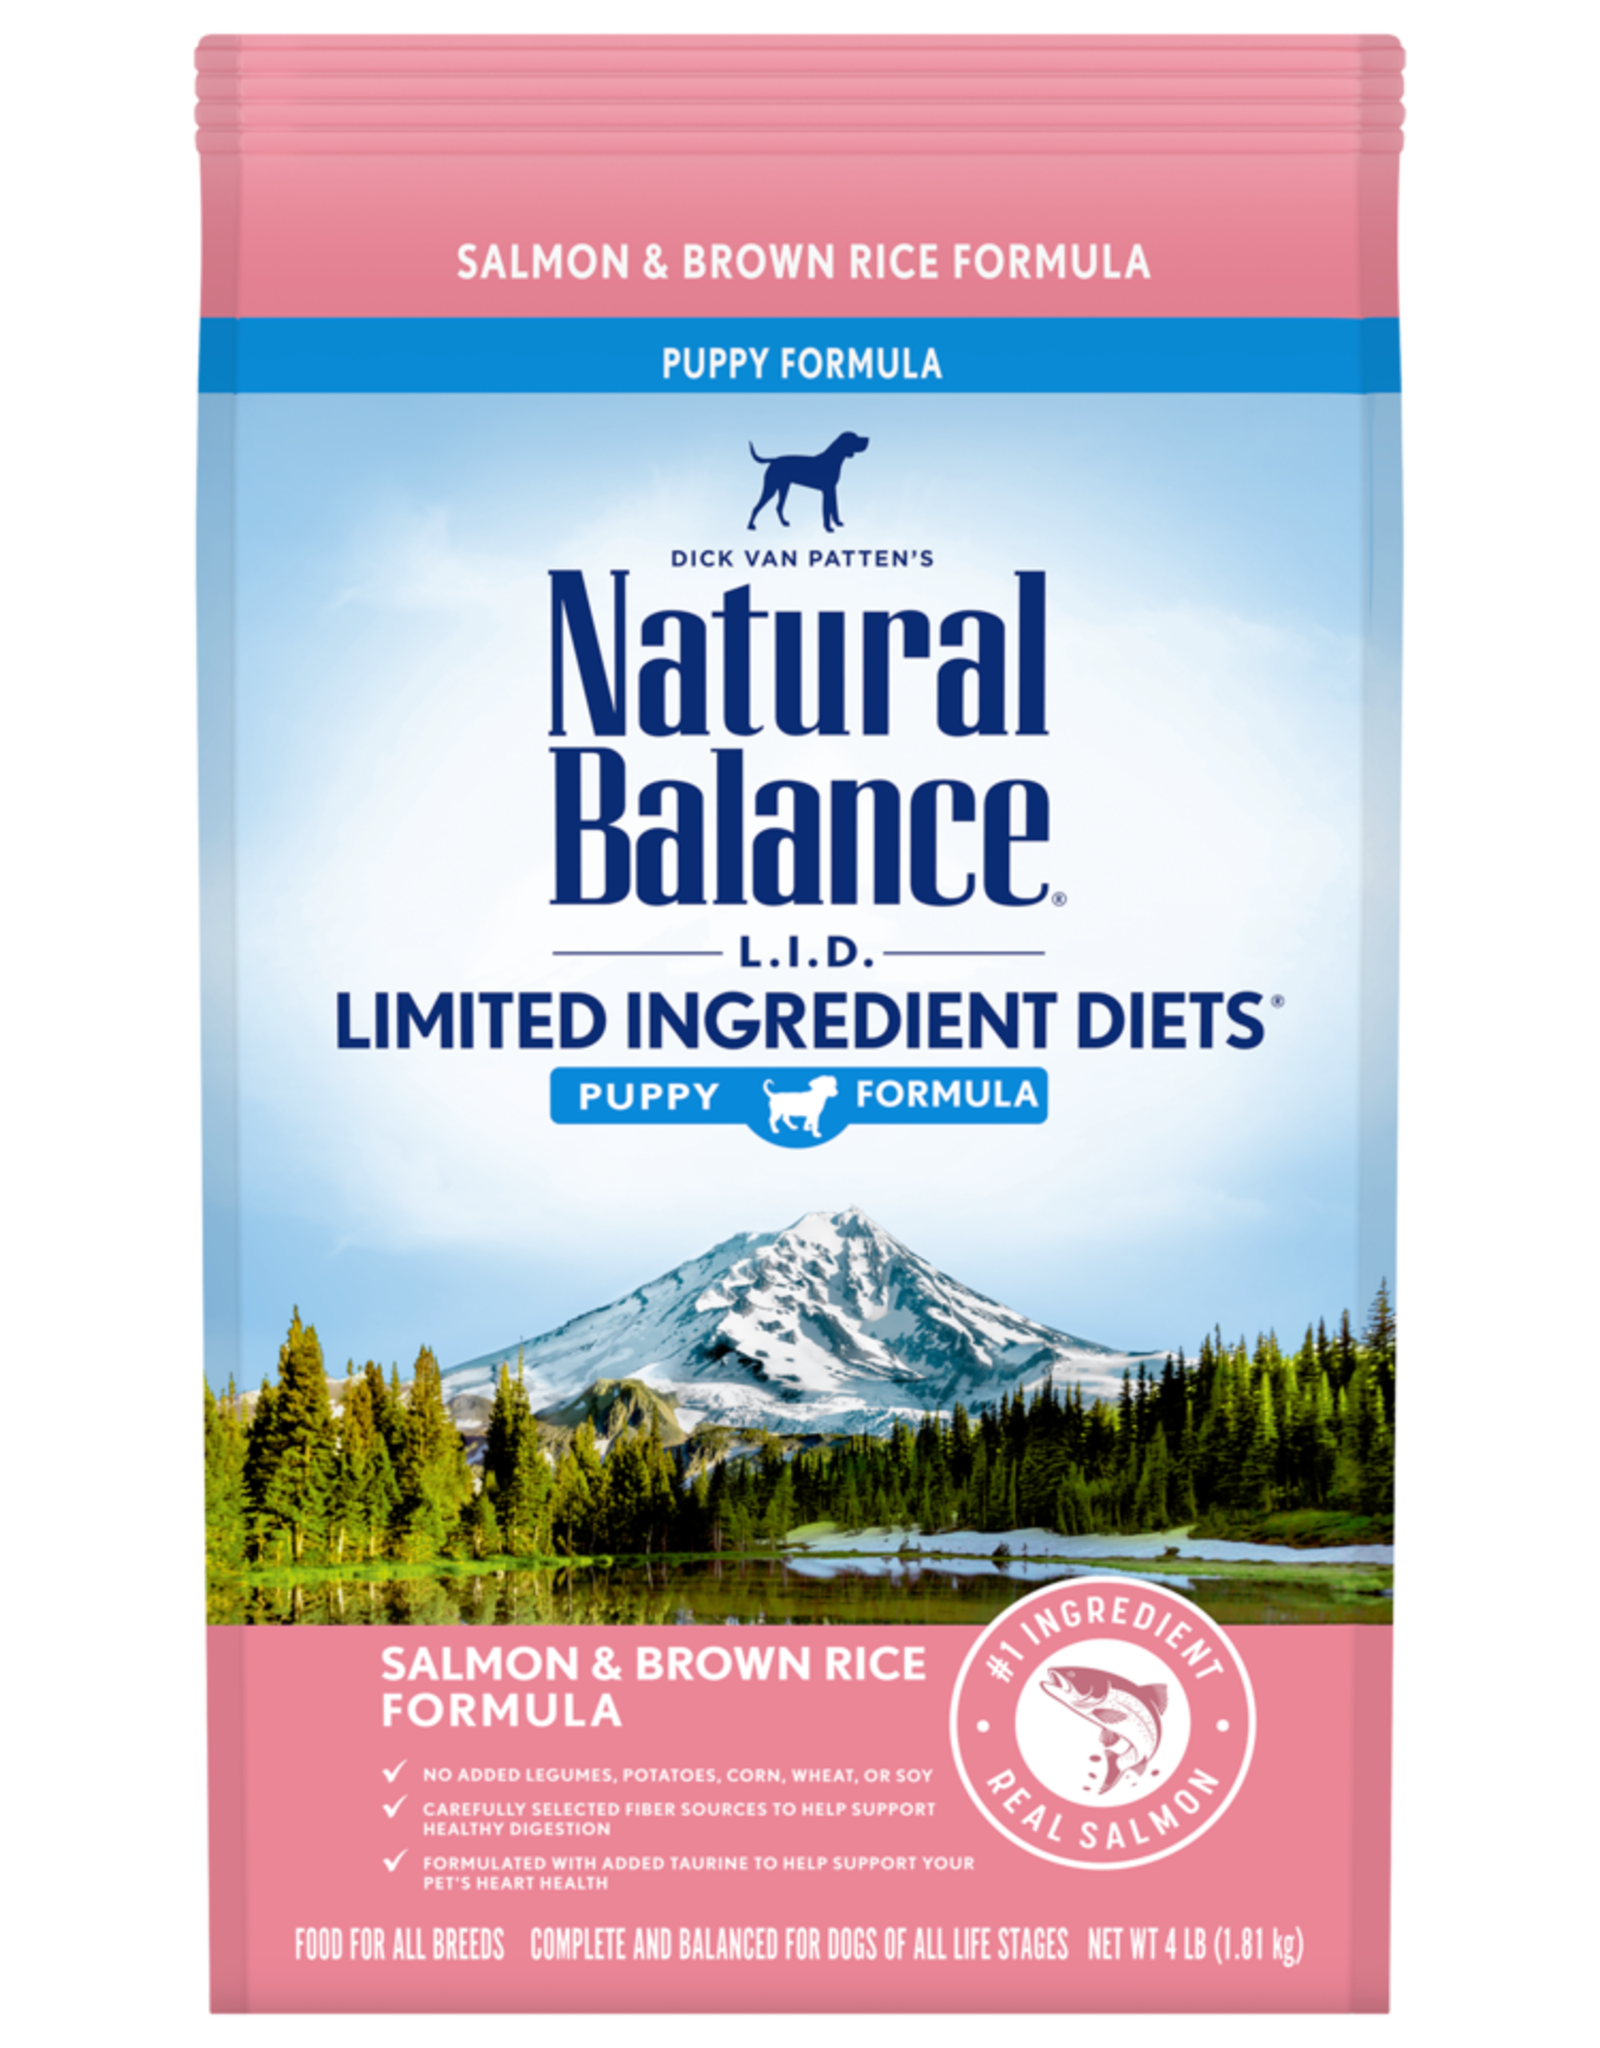 NATURAL BALANCE PET FOODS, INC NATURAL BALANCE LID SALMON & RICE 4LBS